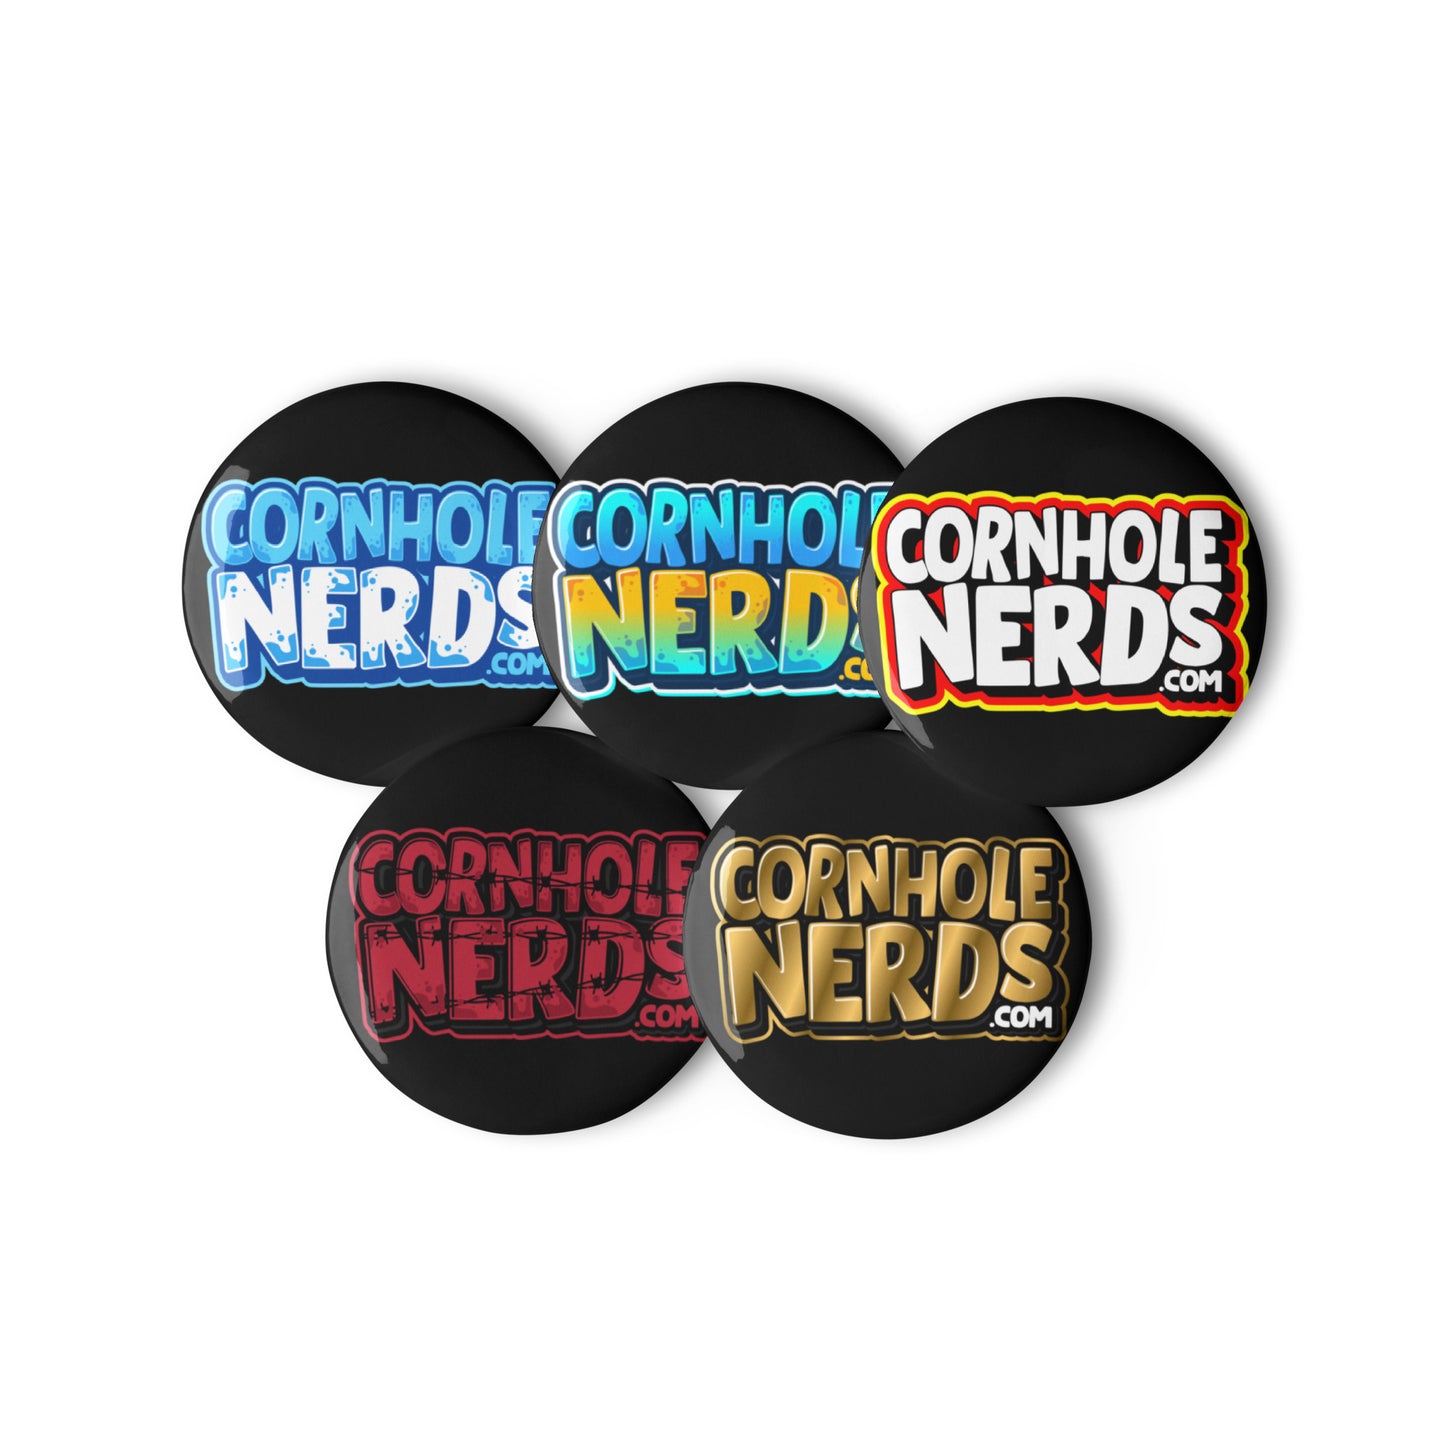 Cornhole Nerds set of pin buttons